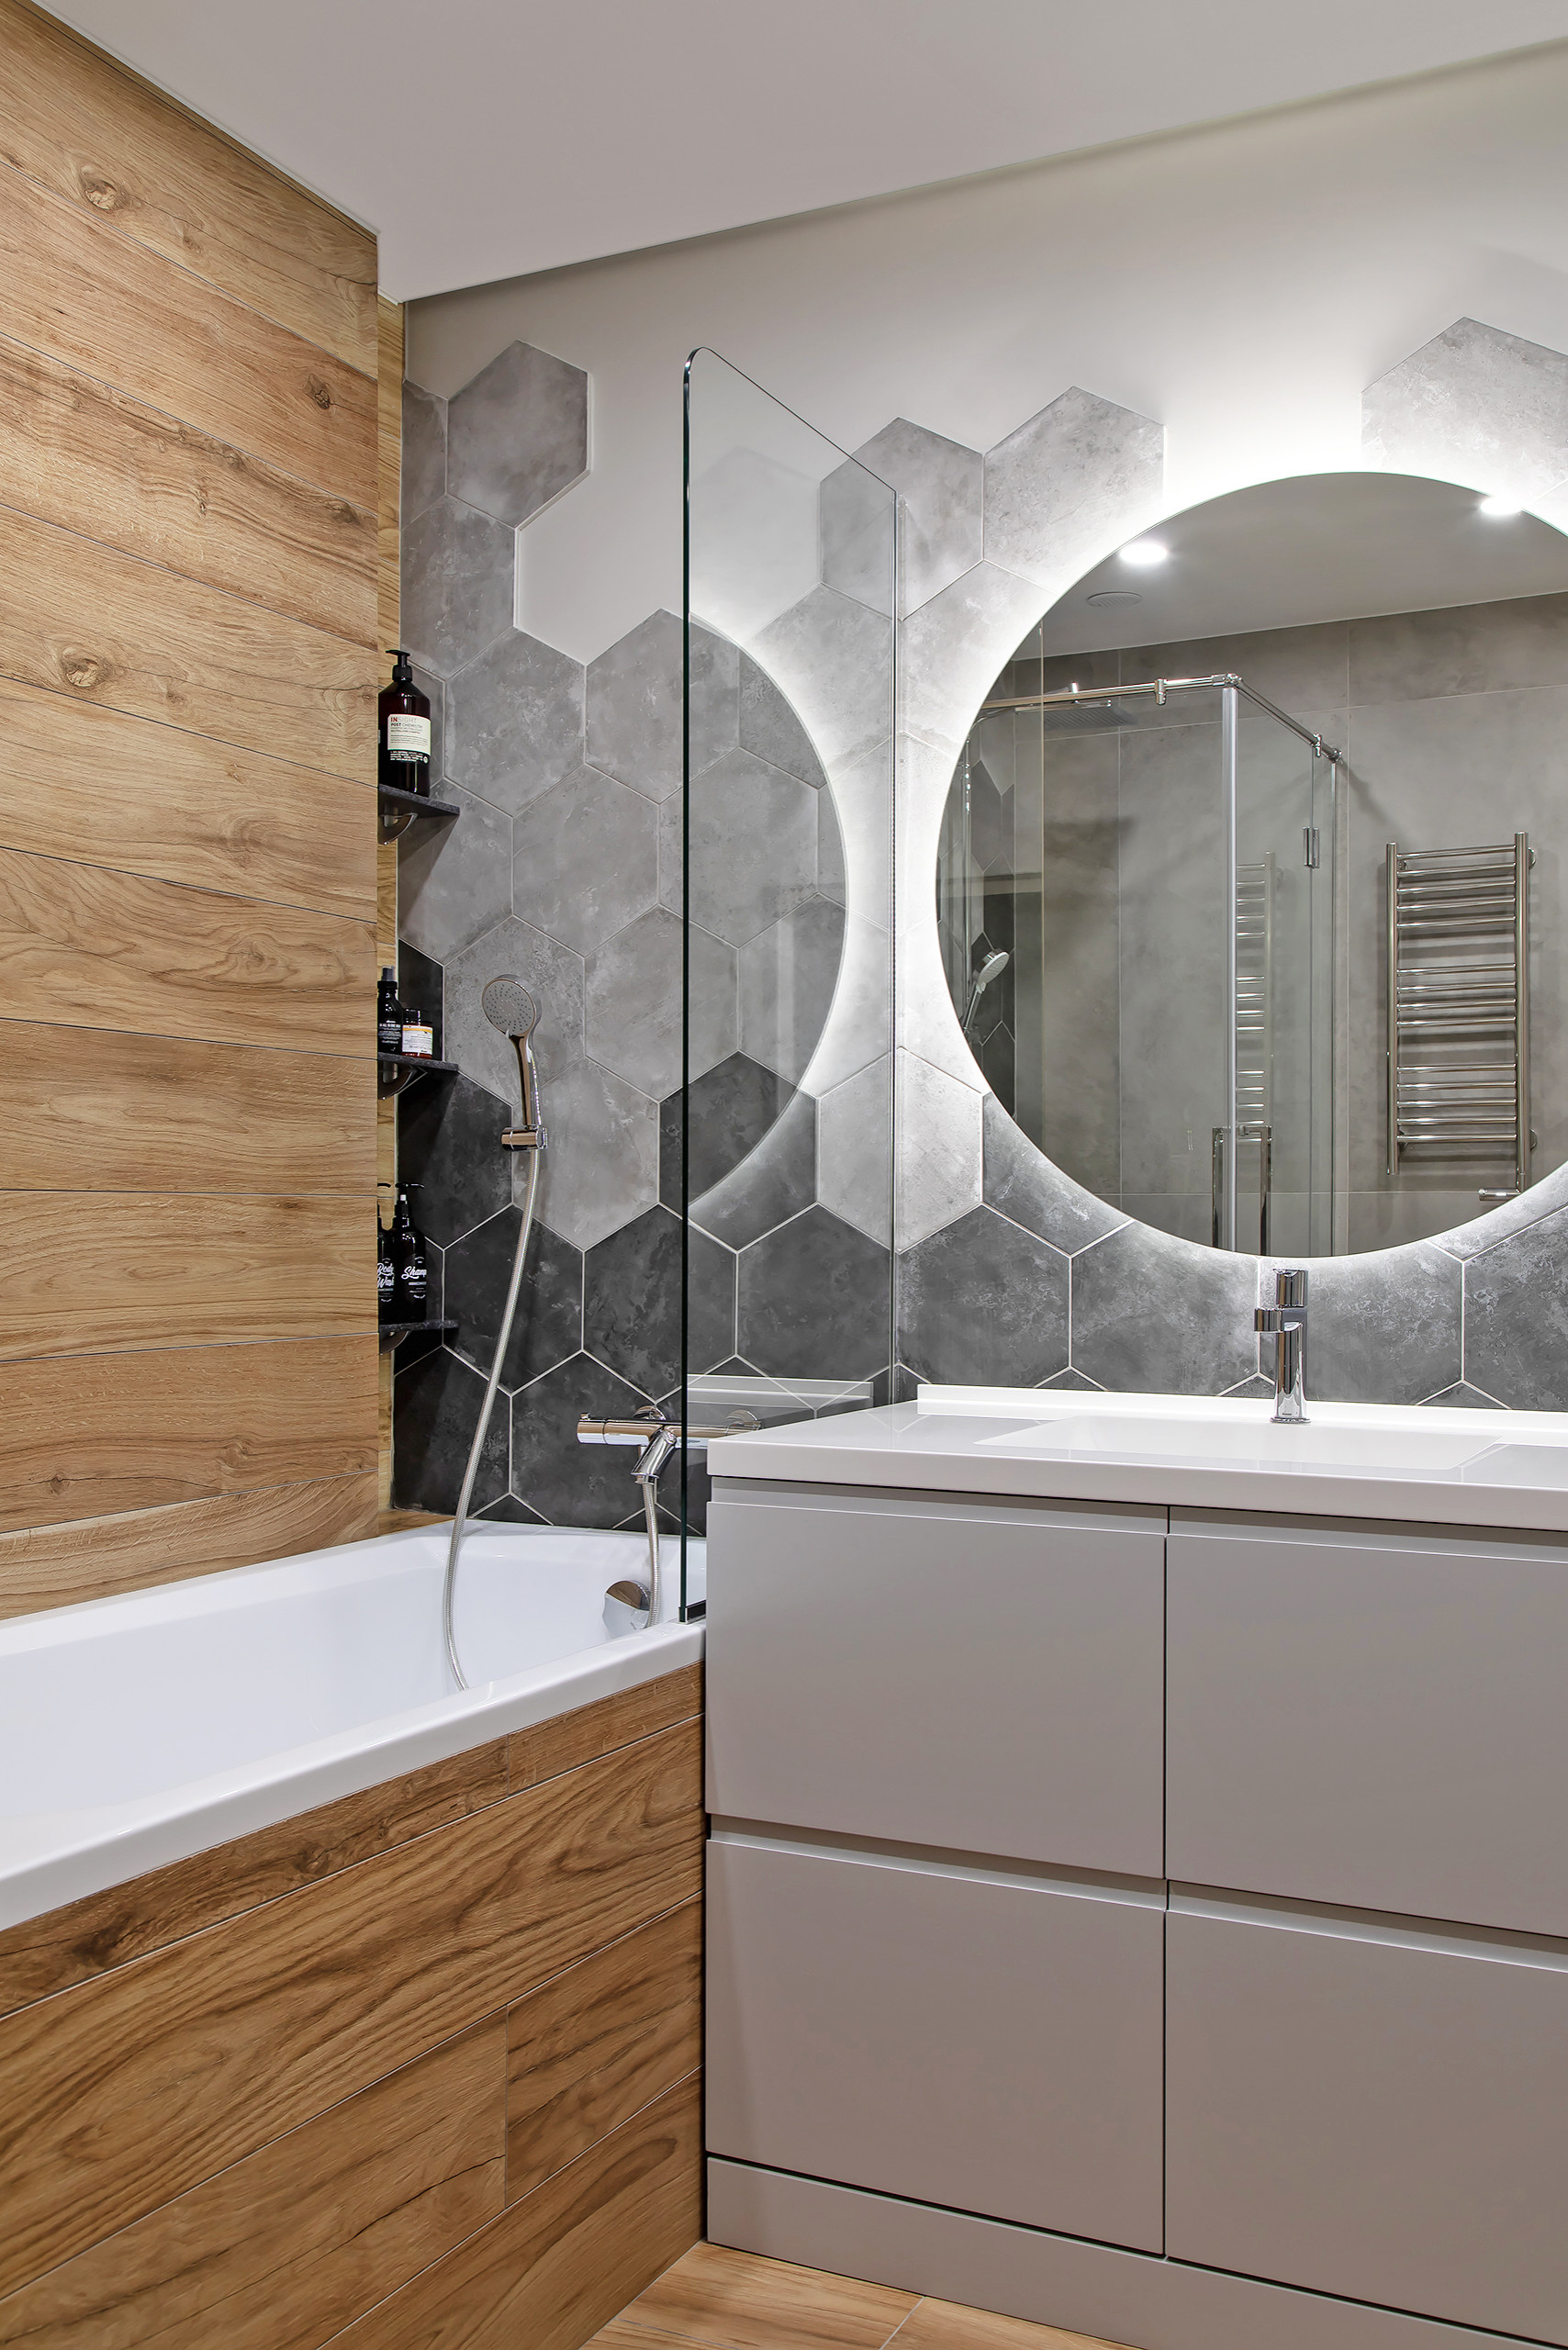 Простой дизайн ванной комнаты: создание пространства, отражающего ваш стиль